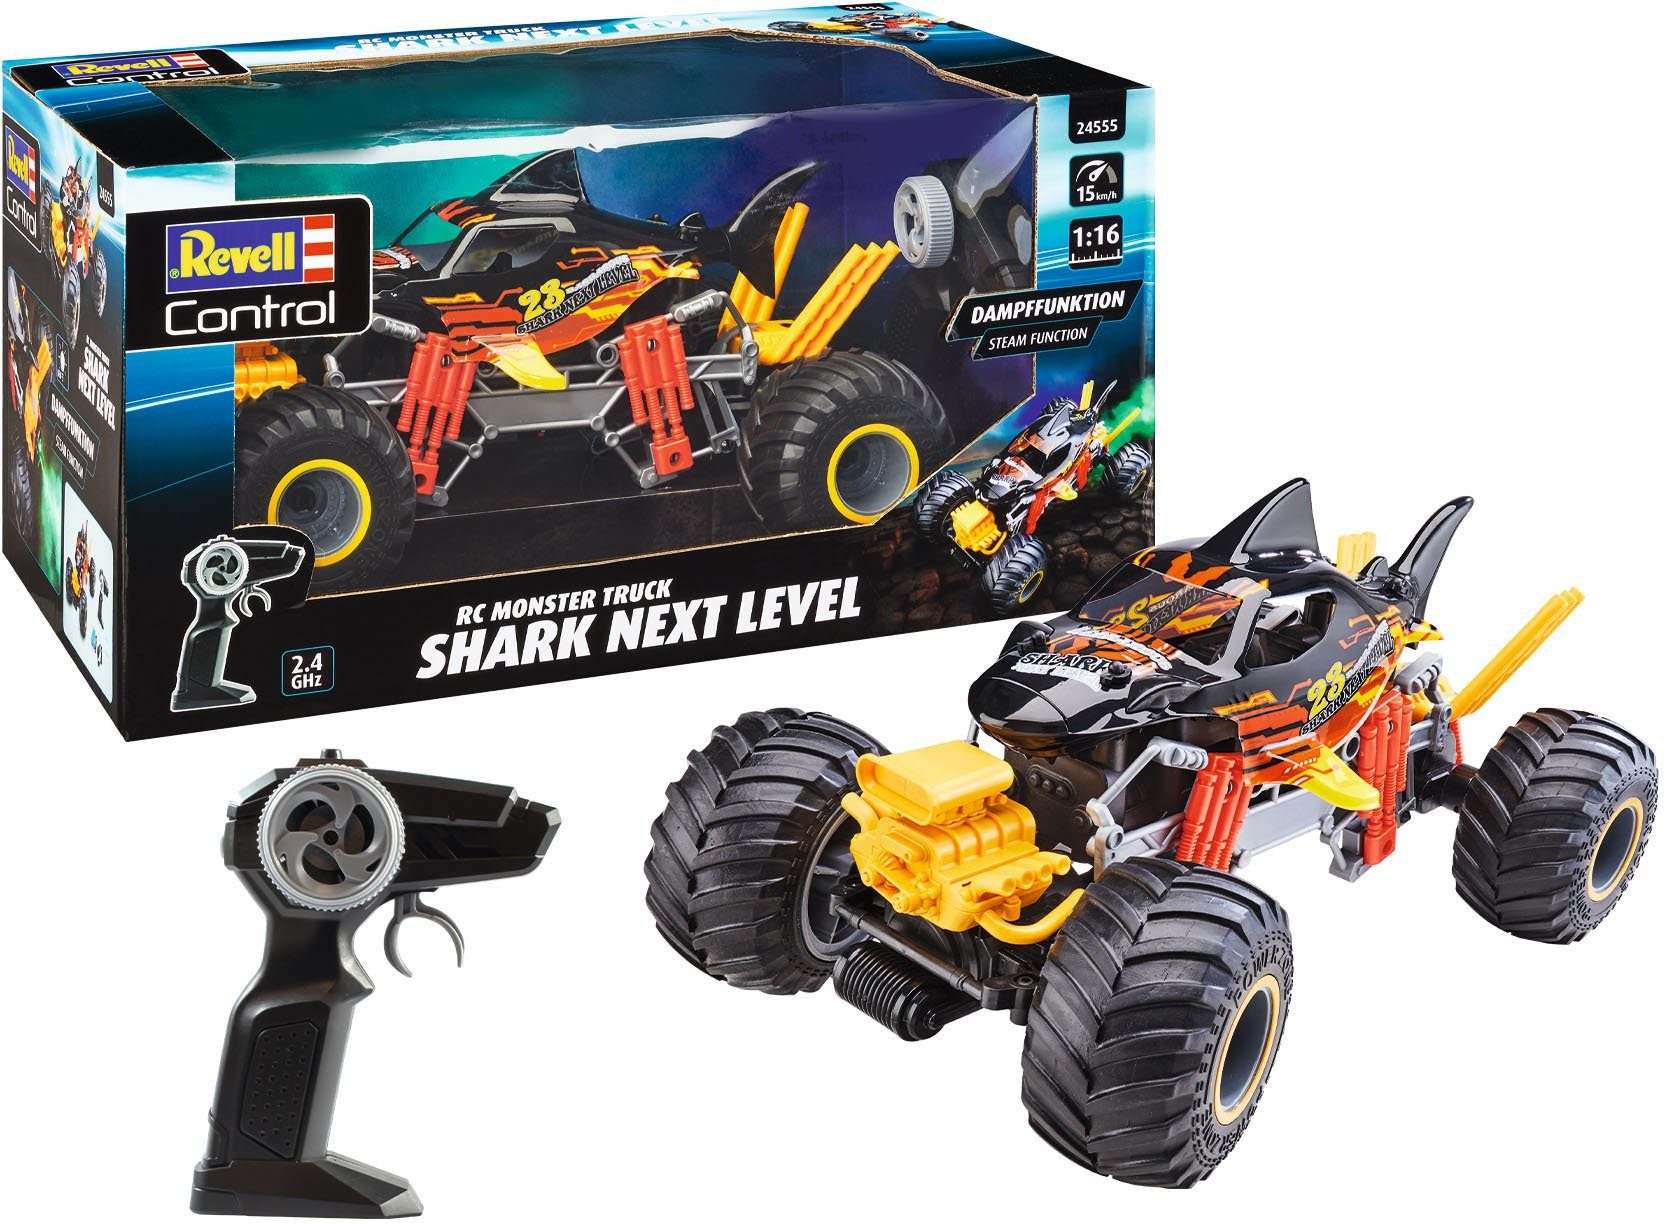 Revell® RC-Monstertruck Revell® control, Shark Next Level